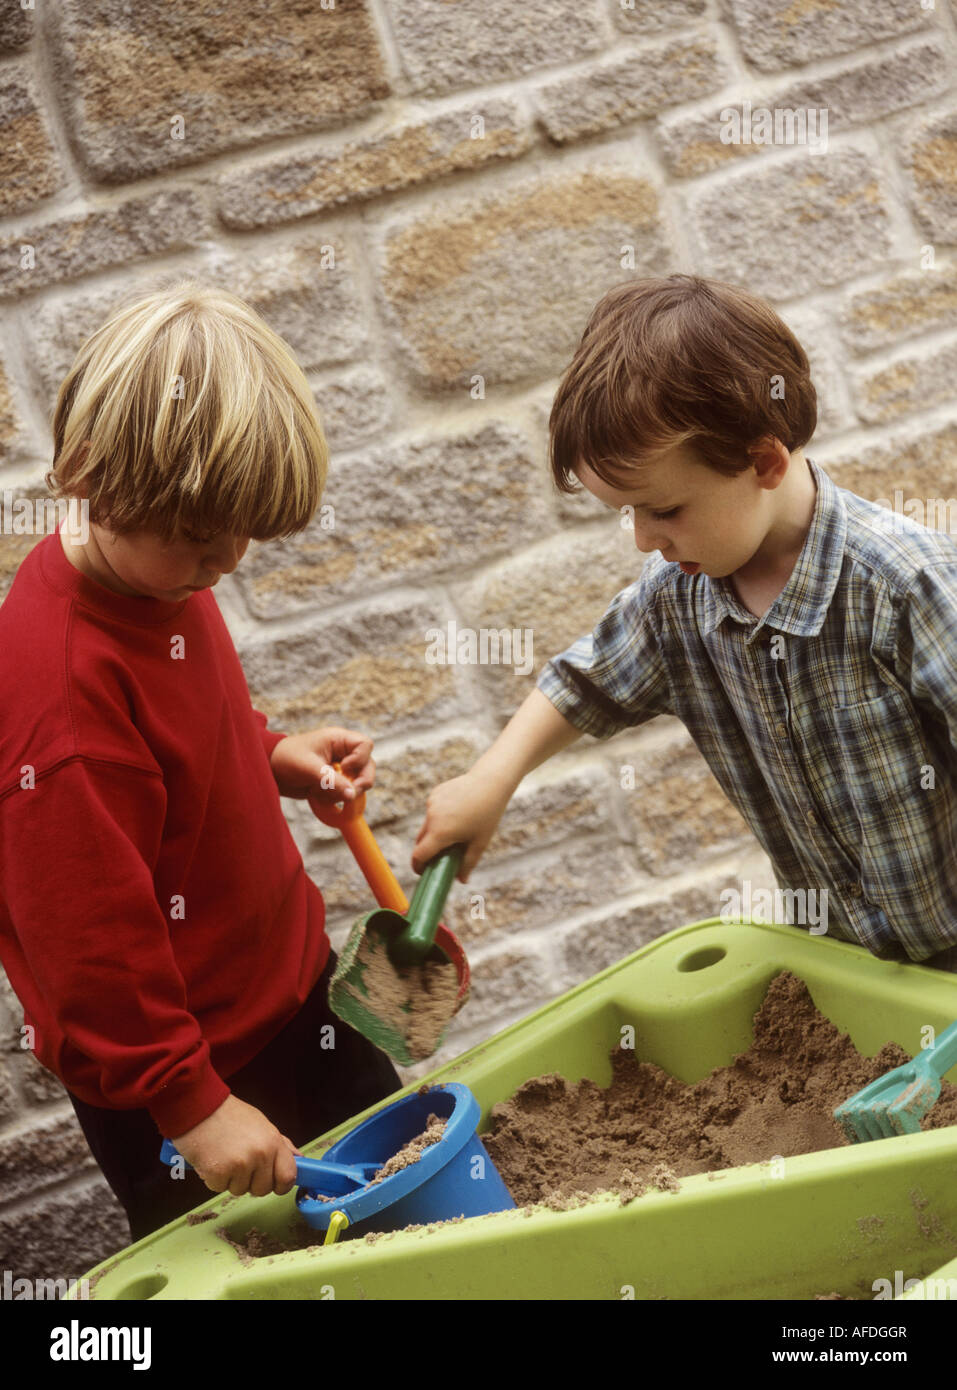 Jungen spielen mit einem Kunststoff Spaten und Containern in einem Sand Tablett Stockfoto